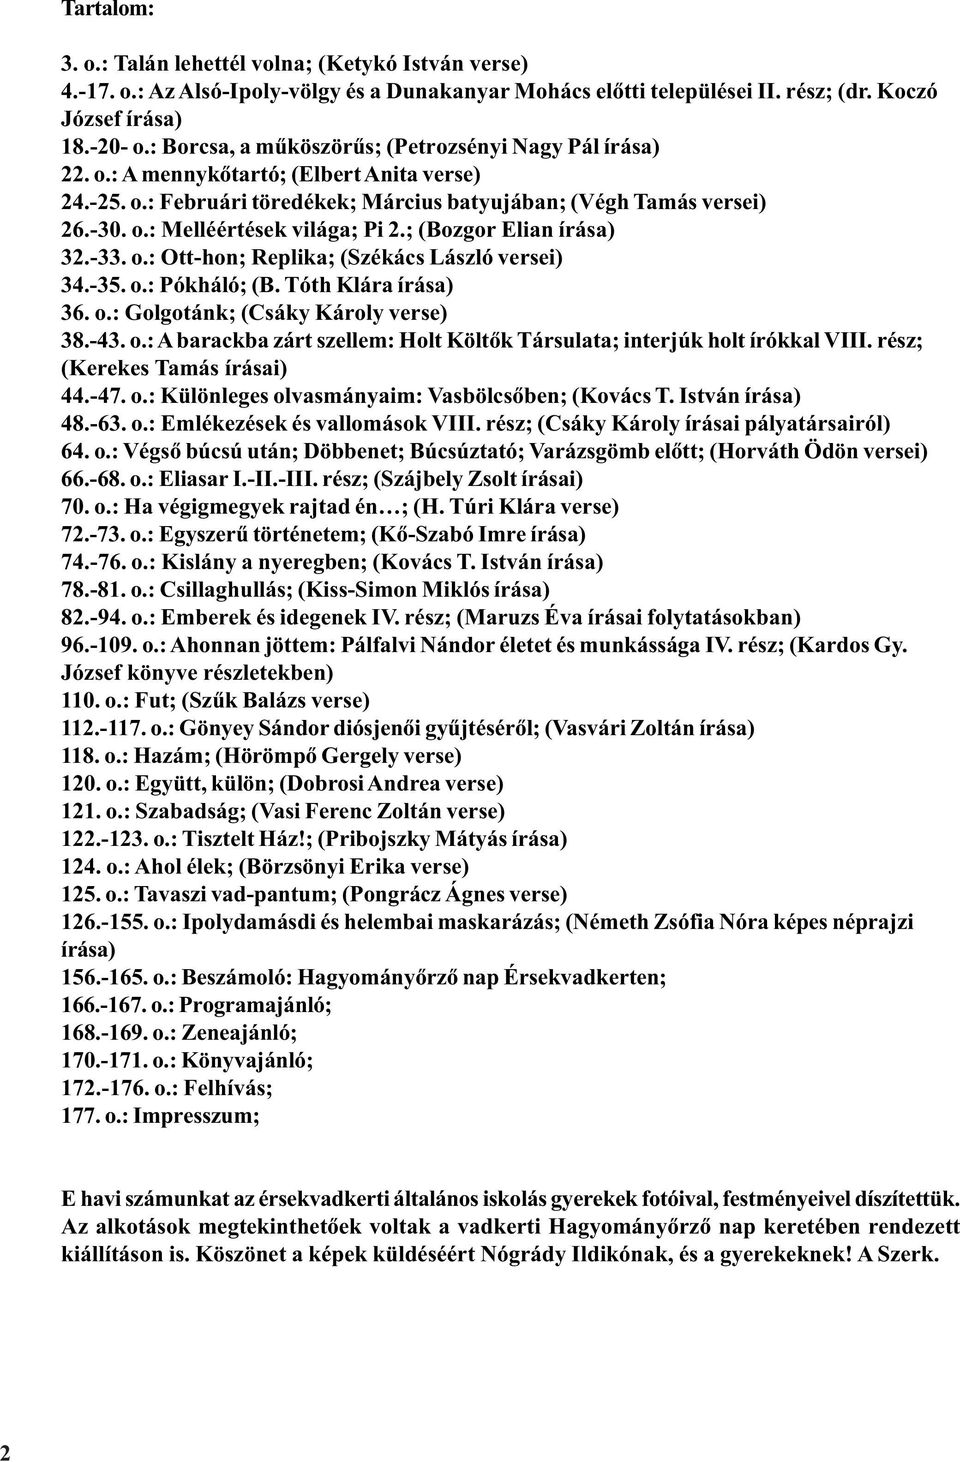 BÖRZSÖNYI HELIKON. "Áldjon meg az Isten mindenkit, aki az áldatlan magyar  ugart tördeli." Érsekvadkert, víztorony - PDF Ingyenes letöltés